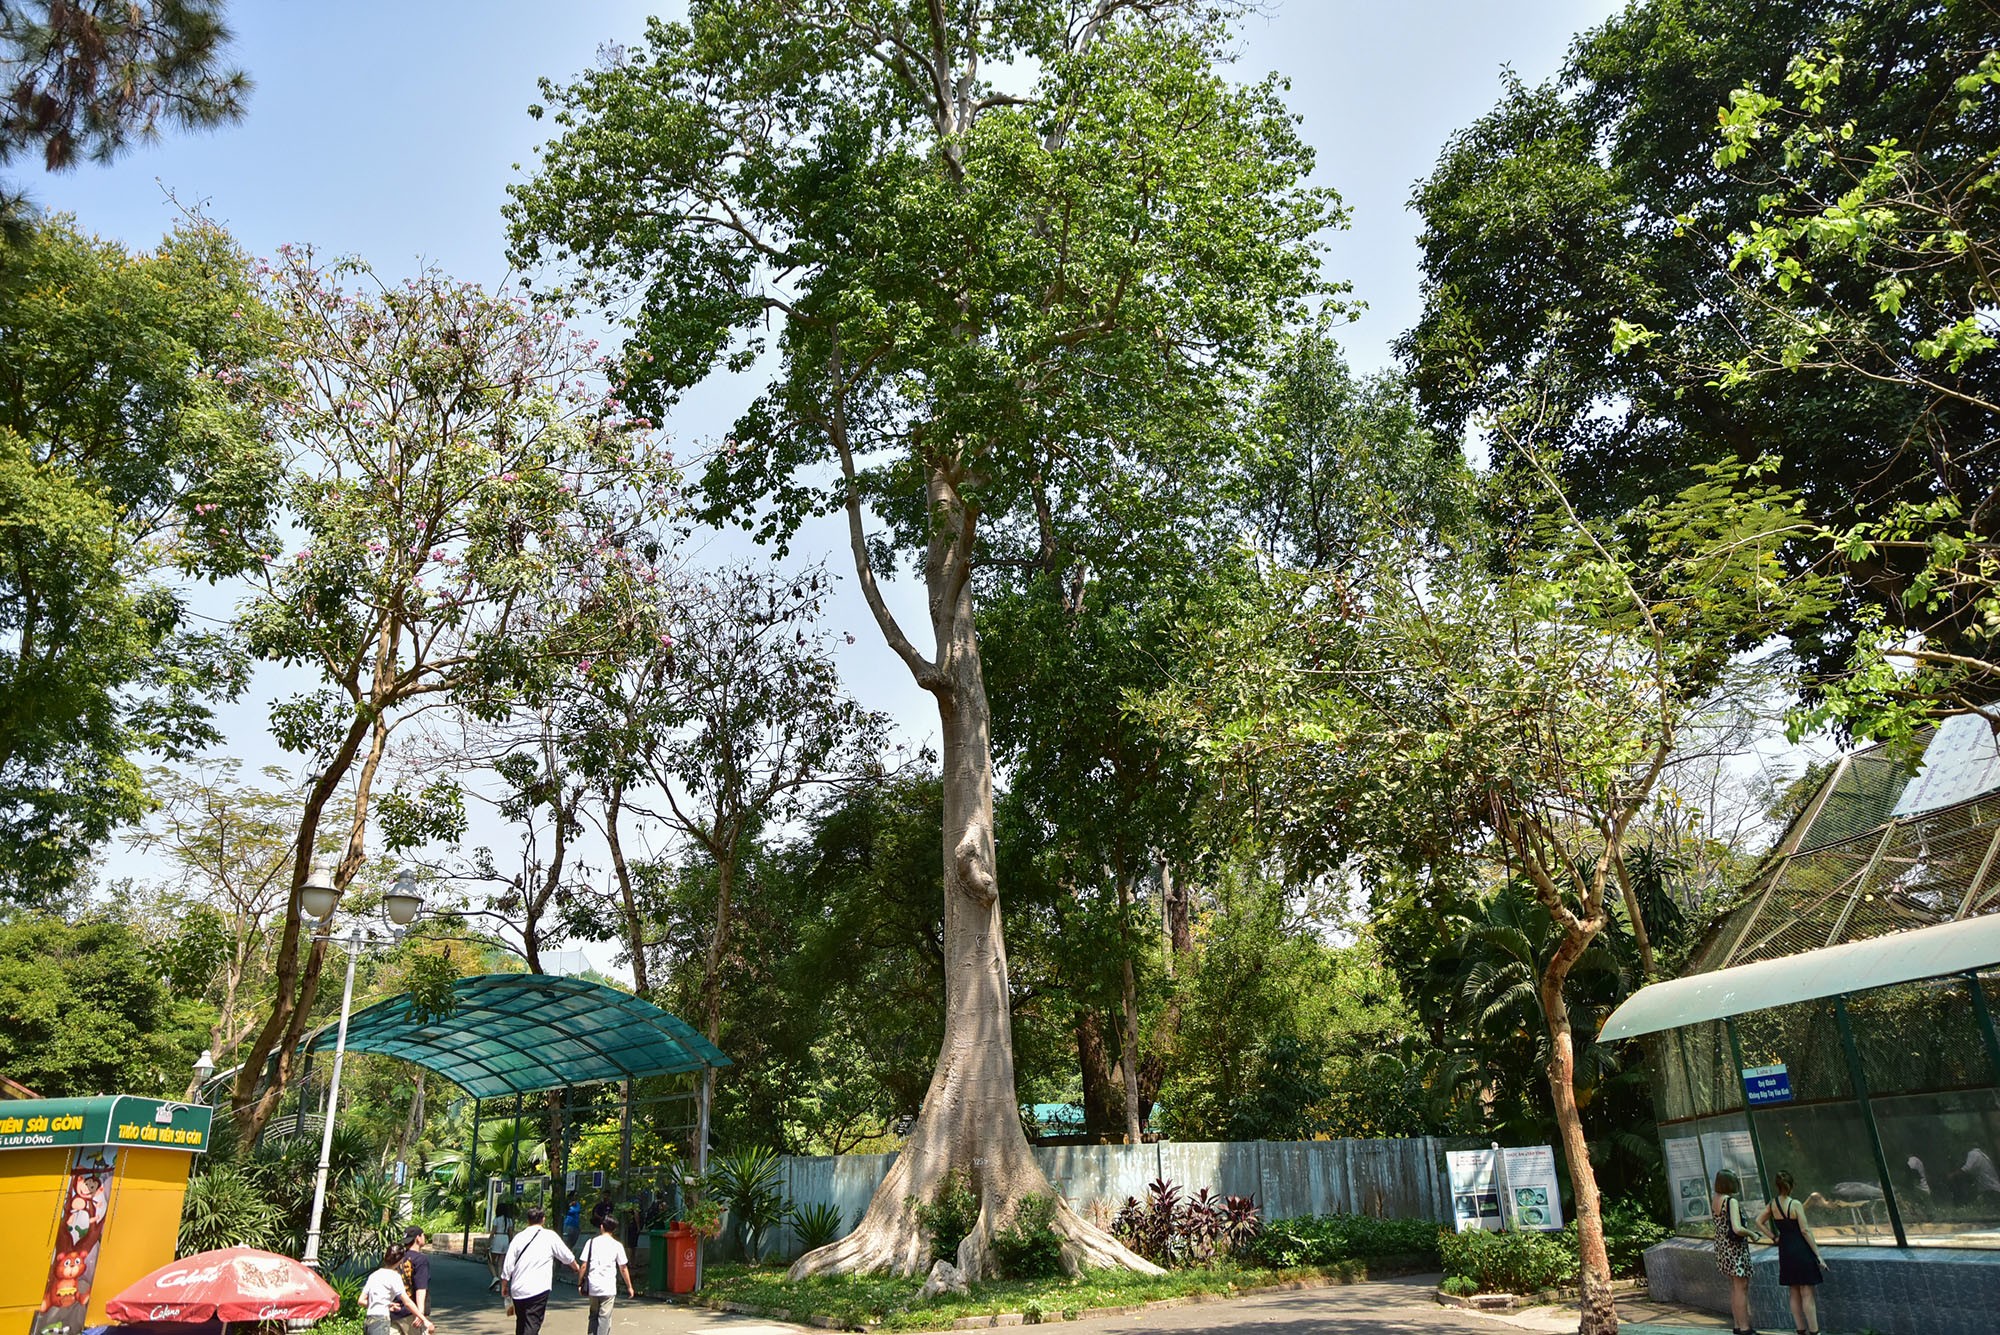 Cách “cụ” sọ khỉ khoảng 50m là “cụ” cây tung – một trong những cây quý hiếm và thuộc hàng lâu đời nhất ở đây, có tuổi đời trên 150 năm. Cây tung duy nhất của sở thú này có đường kính thân 1,2m, cao hơn 20m.